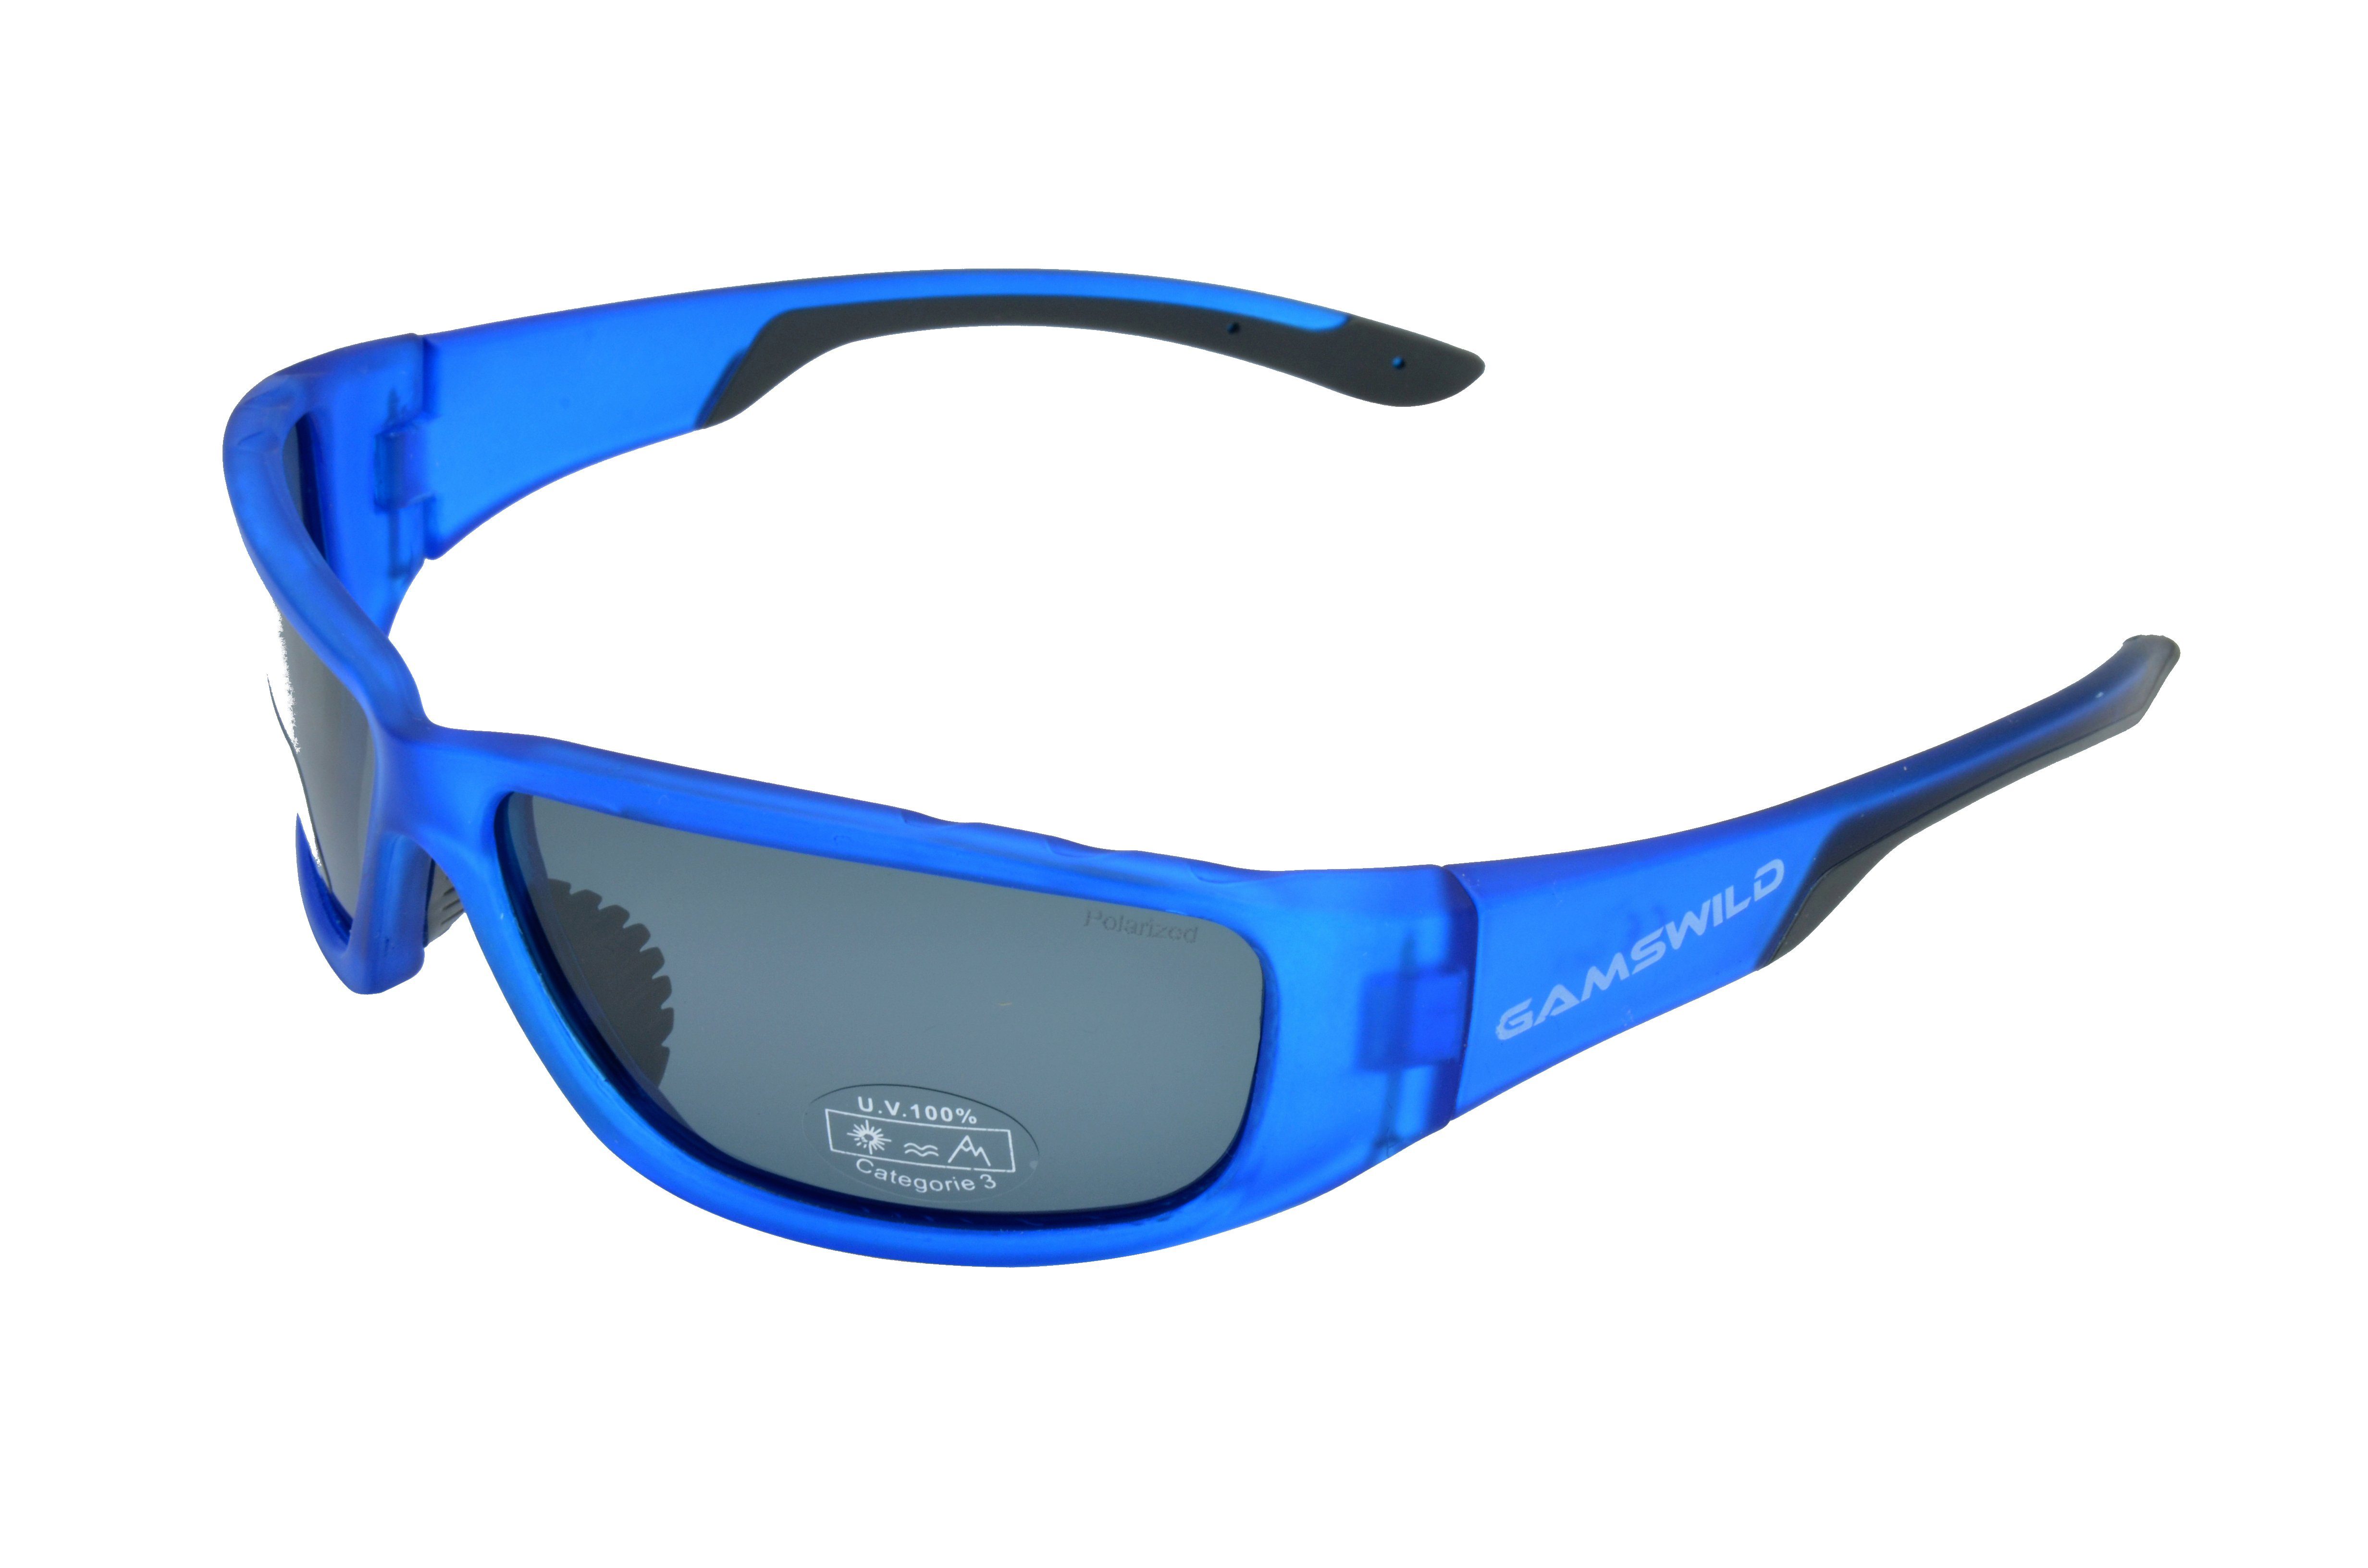 Herren Fahrradbrille WS9331 Sonnenbrille Skibrille grün, Gamswild rot, Unisex Sportbrille polarisiert Damen blau Fassung halbtransparente